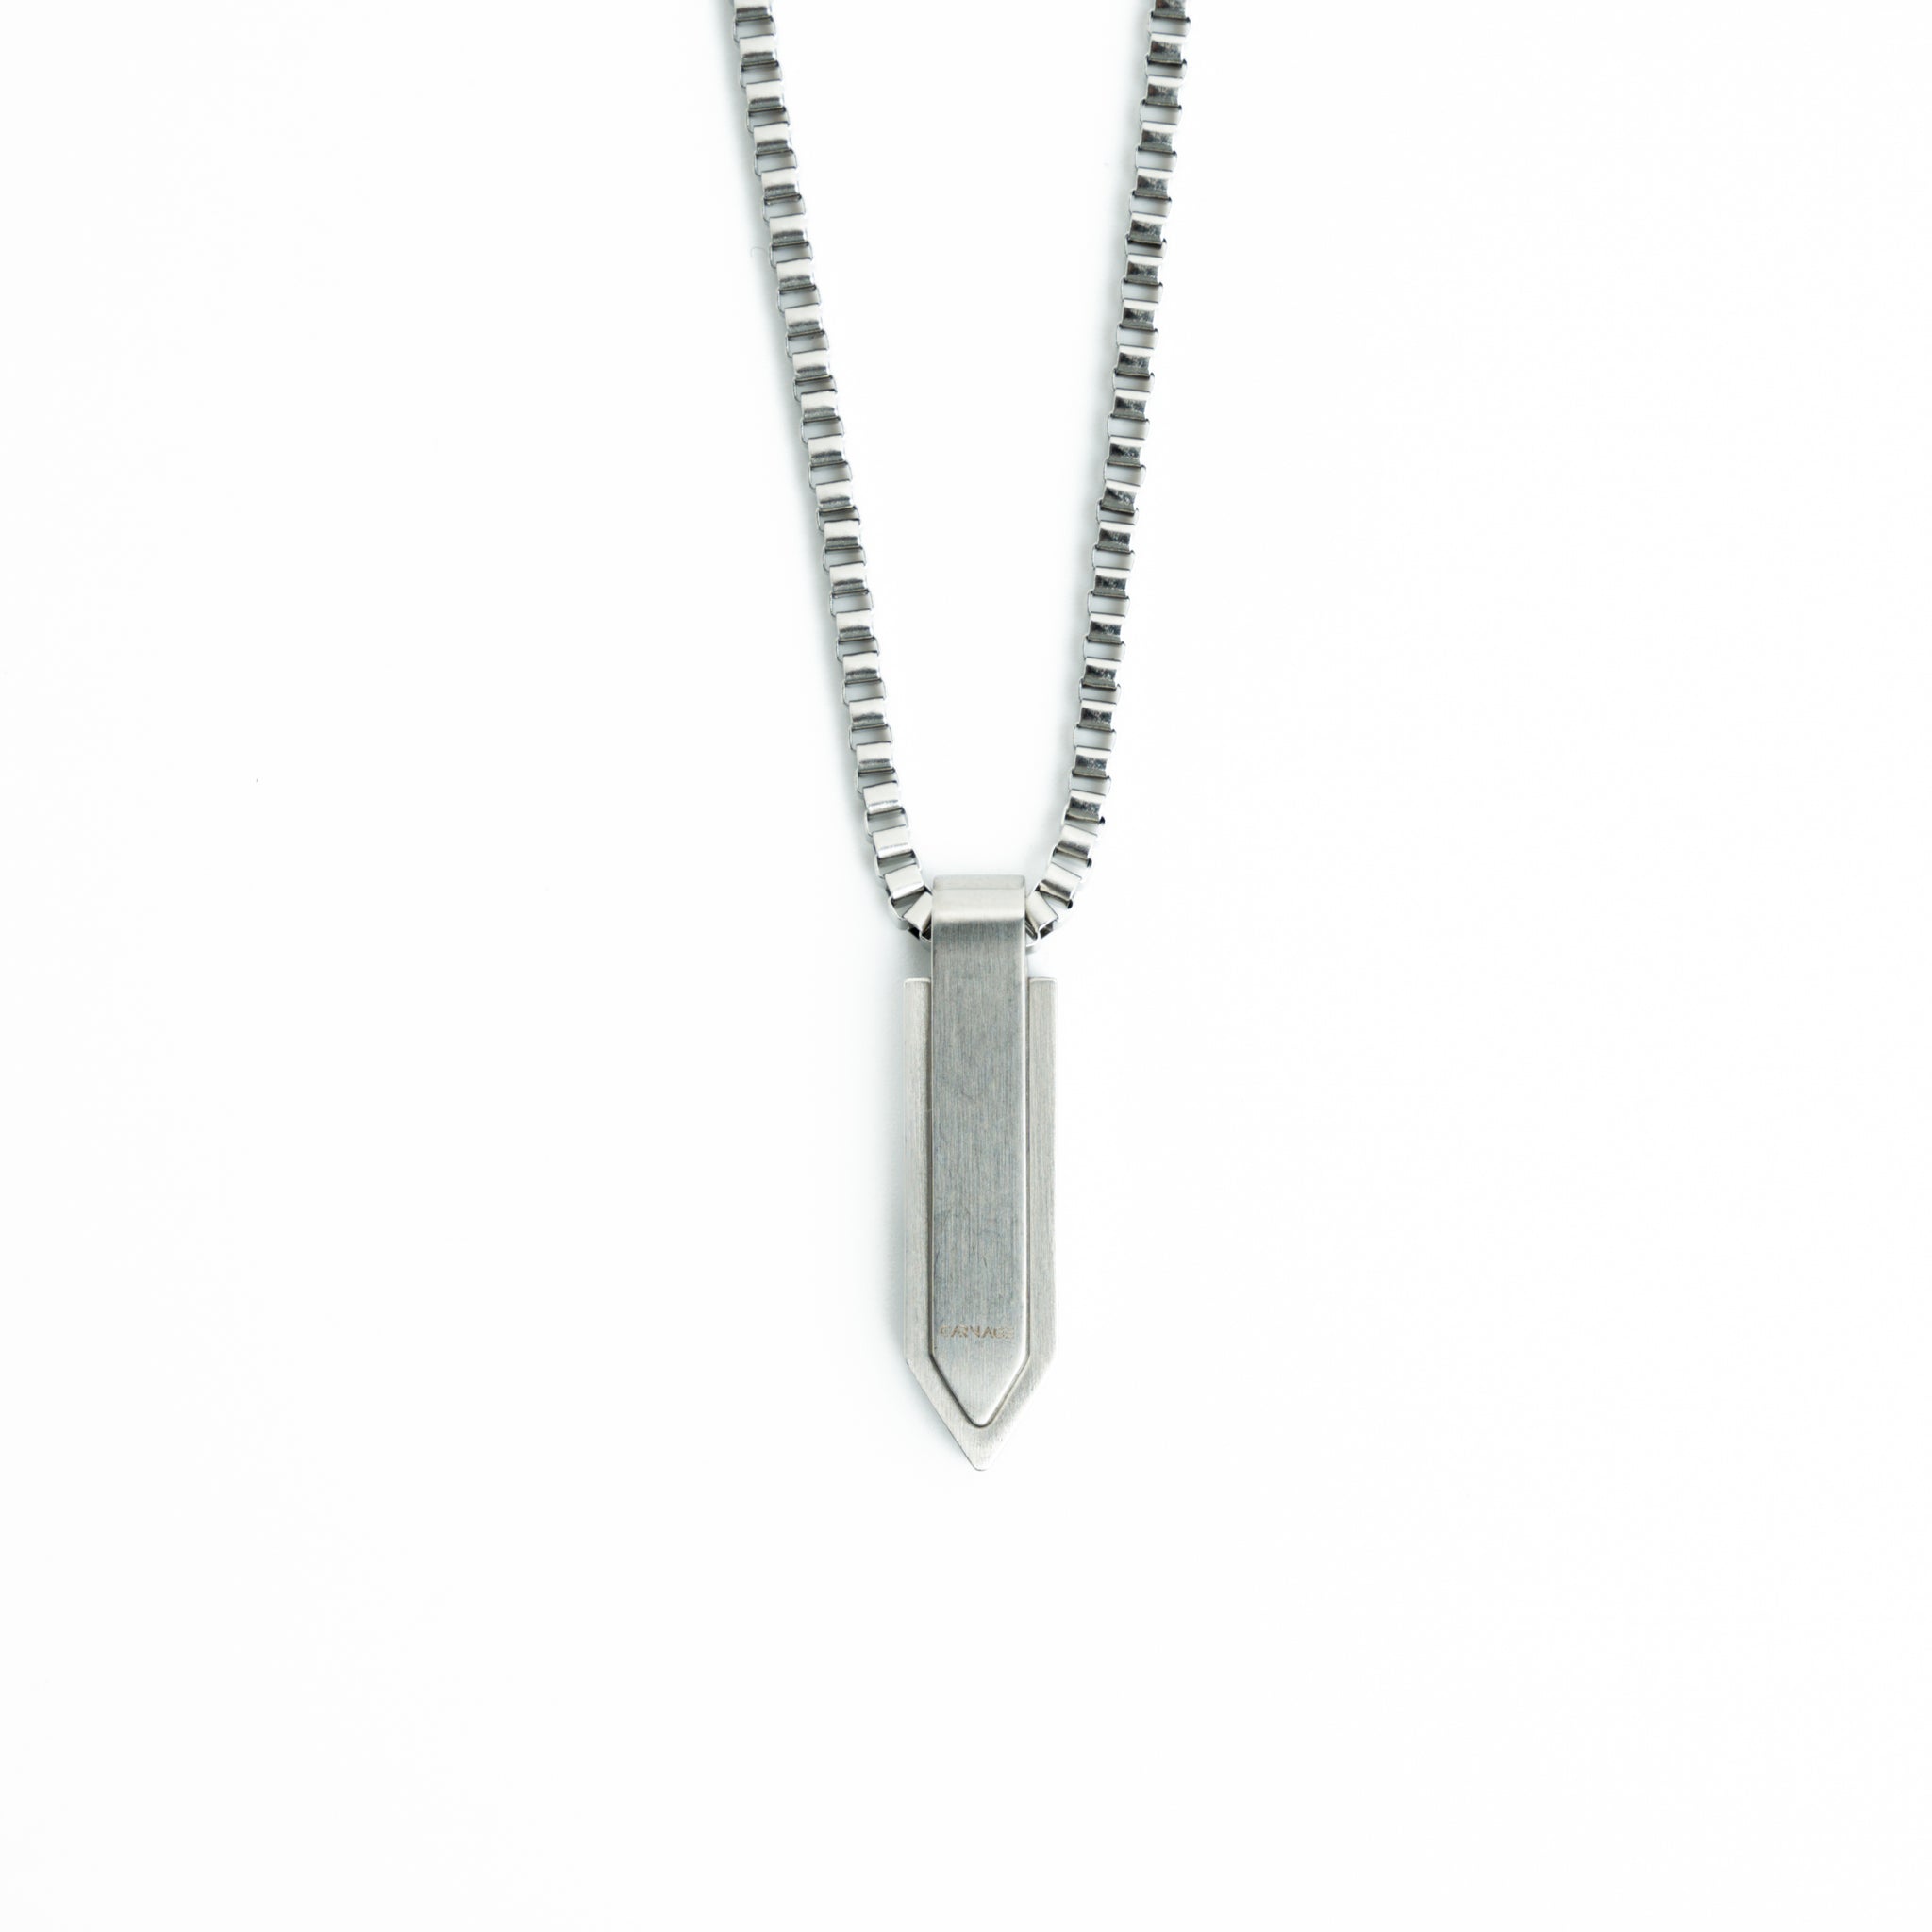 Pentagon Necklace - Silver